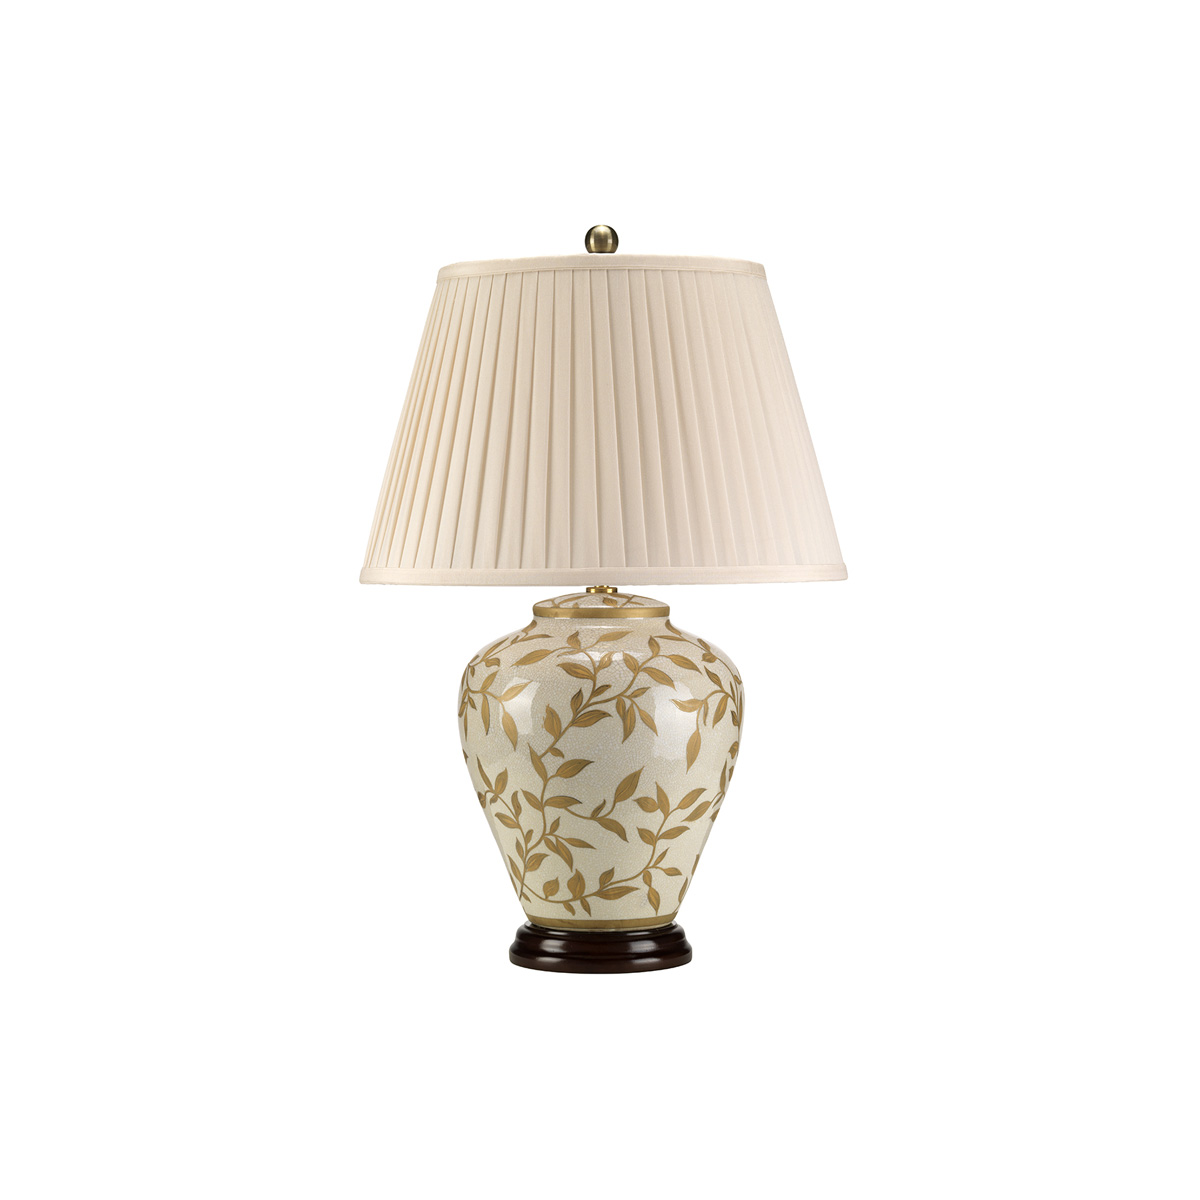 Настольная лампа LEAVES-BR-GL-TL, Настольные лампы Классический/Традиционный | Керамика | Прихожая, спальня, гостиная, столовая.